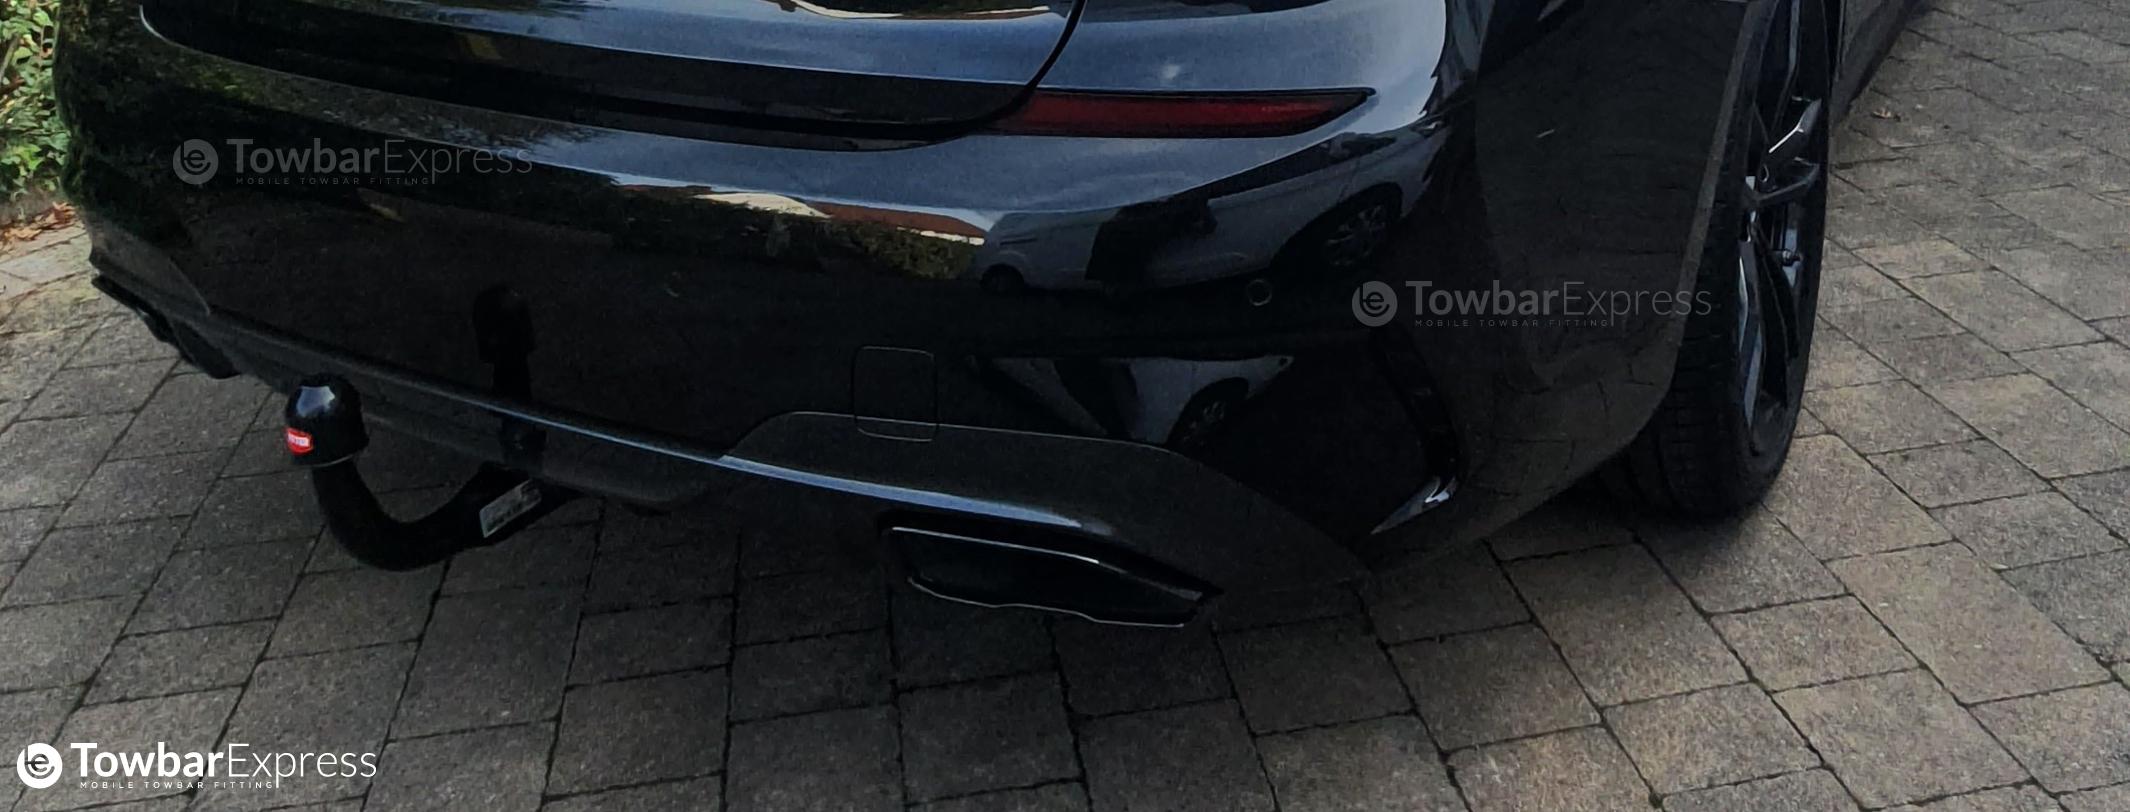 BMW 3 Series Towbar